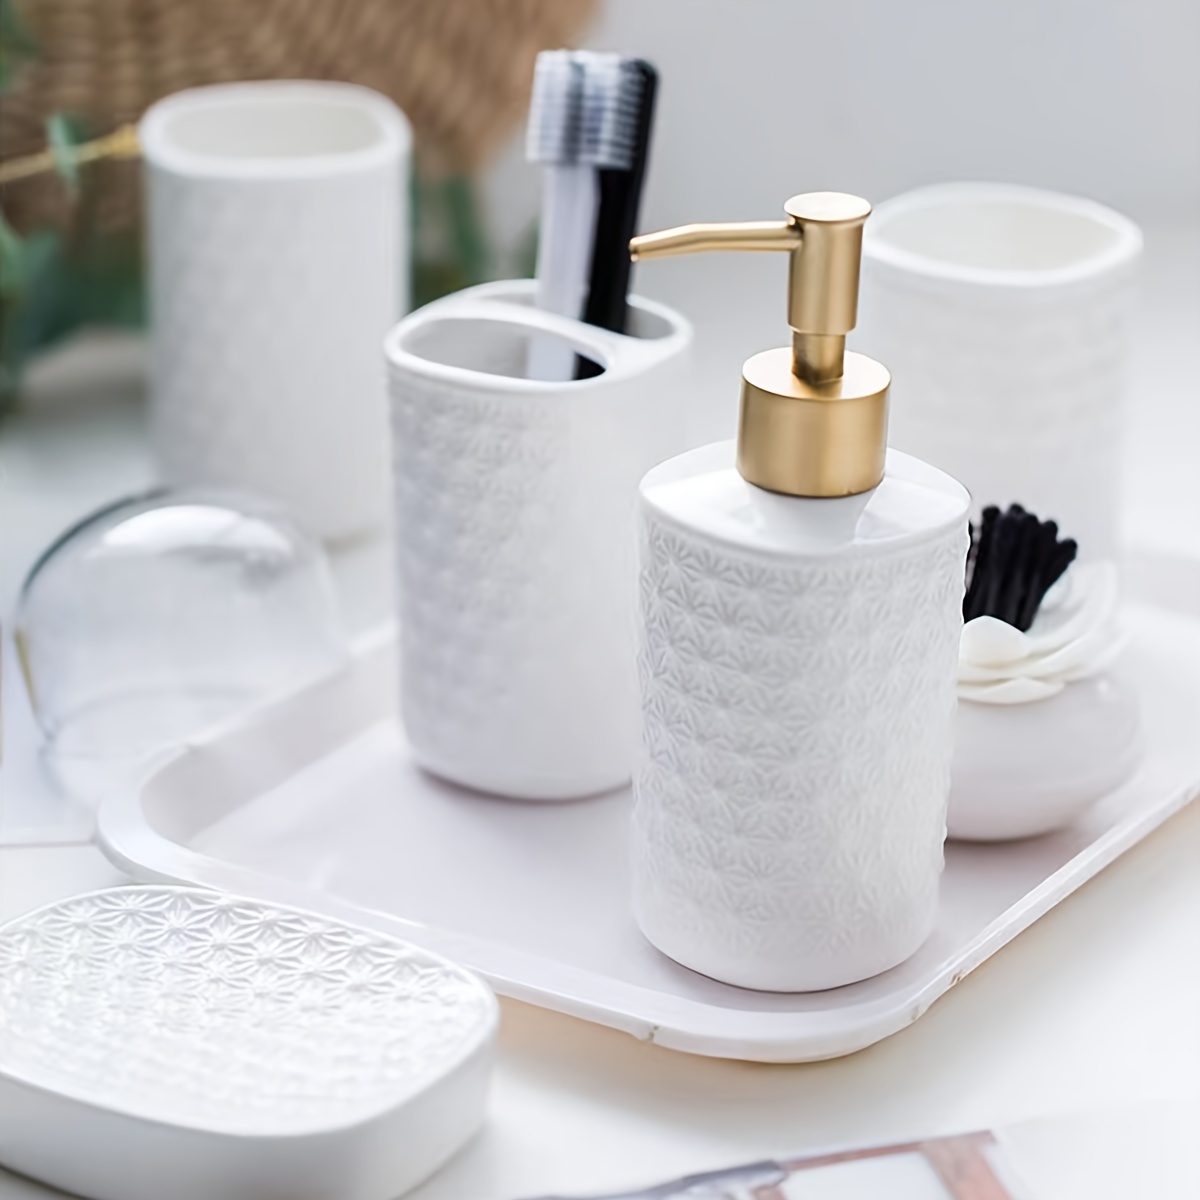 White Ceramic Bathroom Accessories